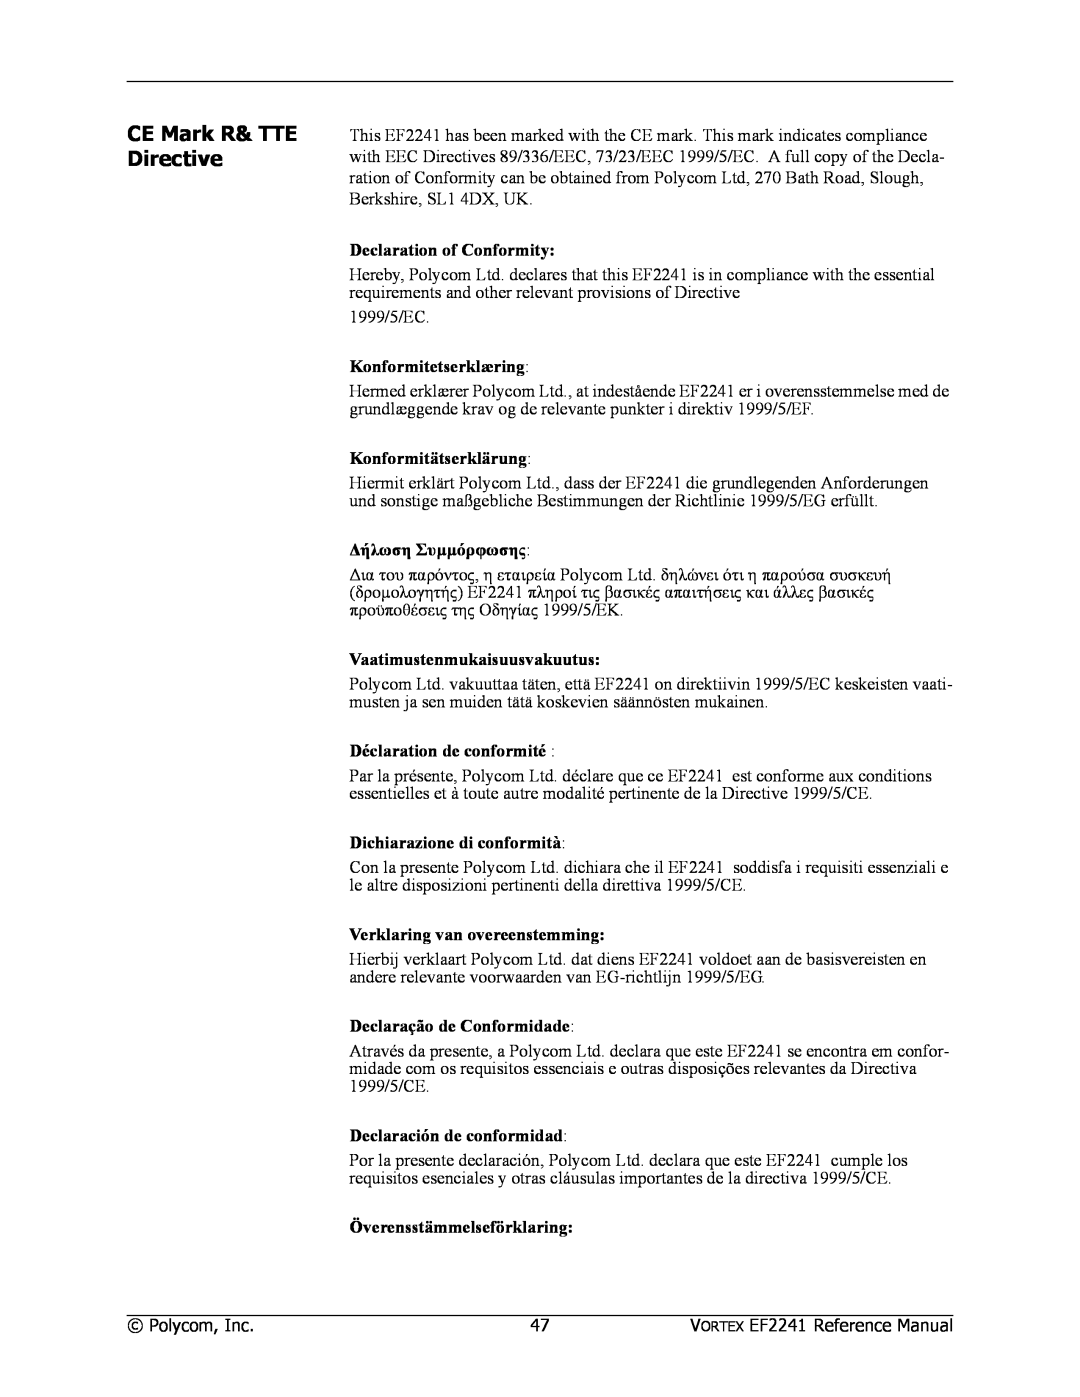 Polycom EF2241 manual CE Mark R& TTE Directive, Declaration of Conformity, Konformitetserklæring, Konformitätserklärung 